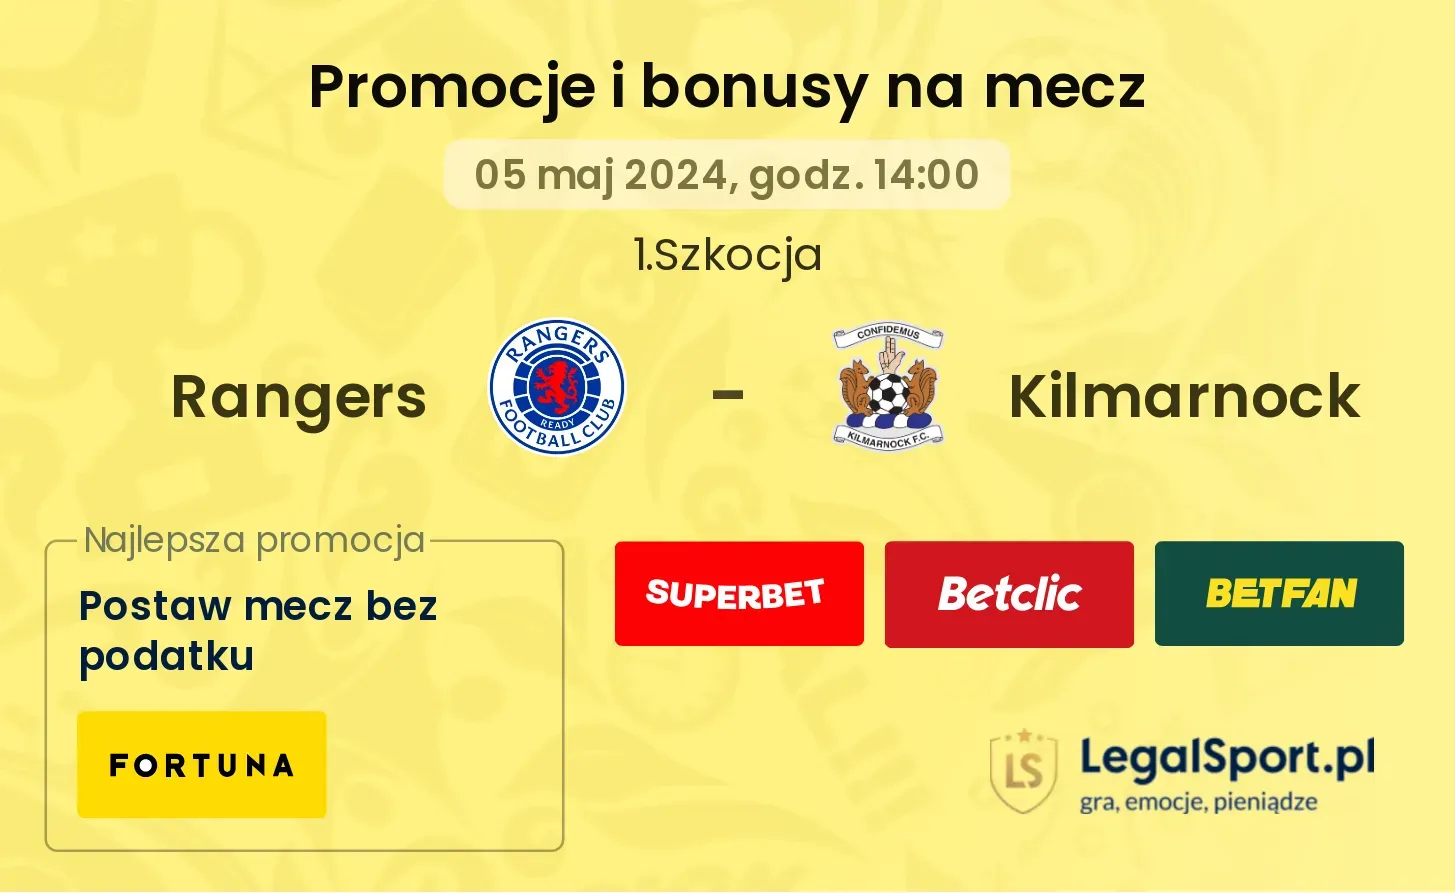 Rangers - Kilmarnock promocje bonusy na mecz